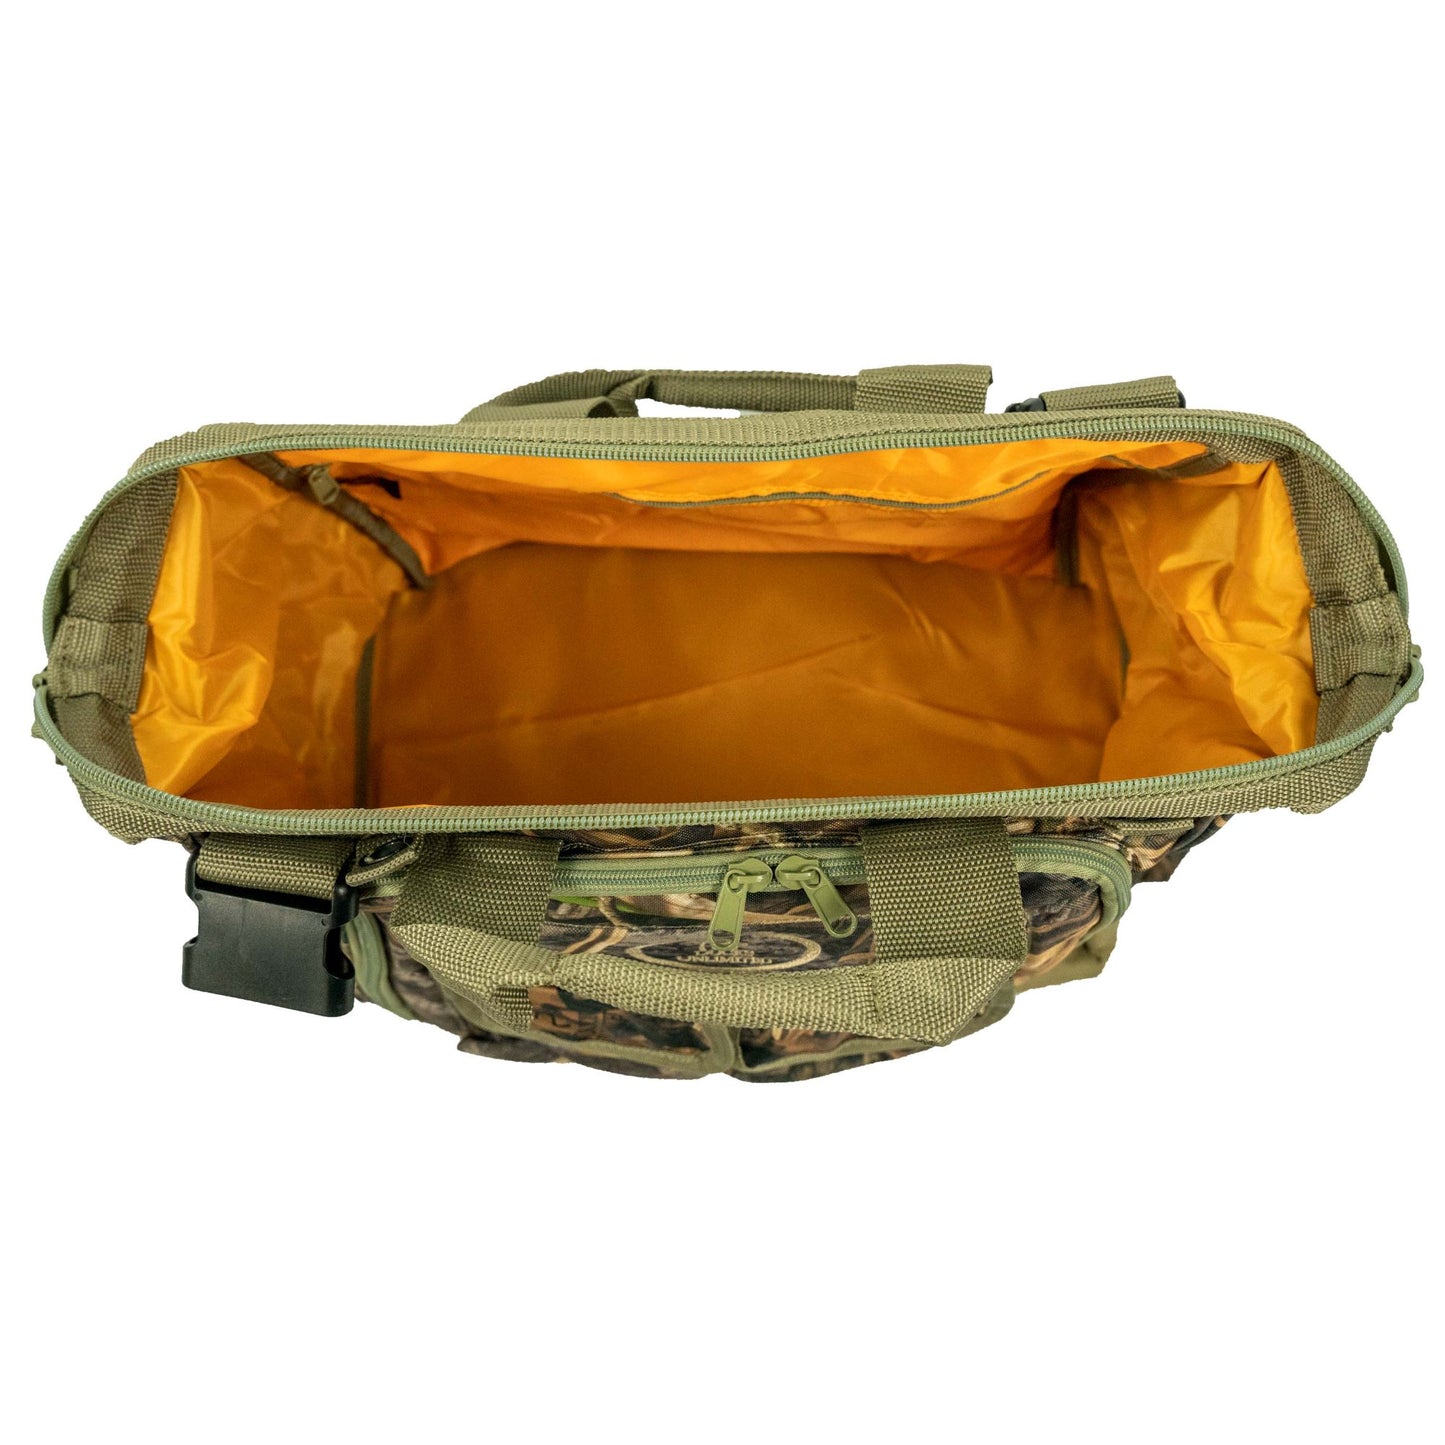 Ducks Unlimited /Mud River Dog Handler Bag